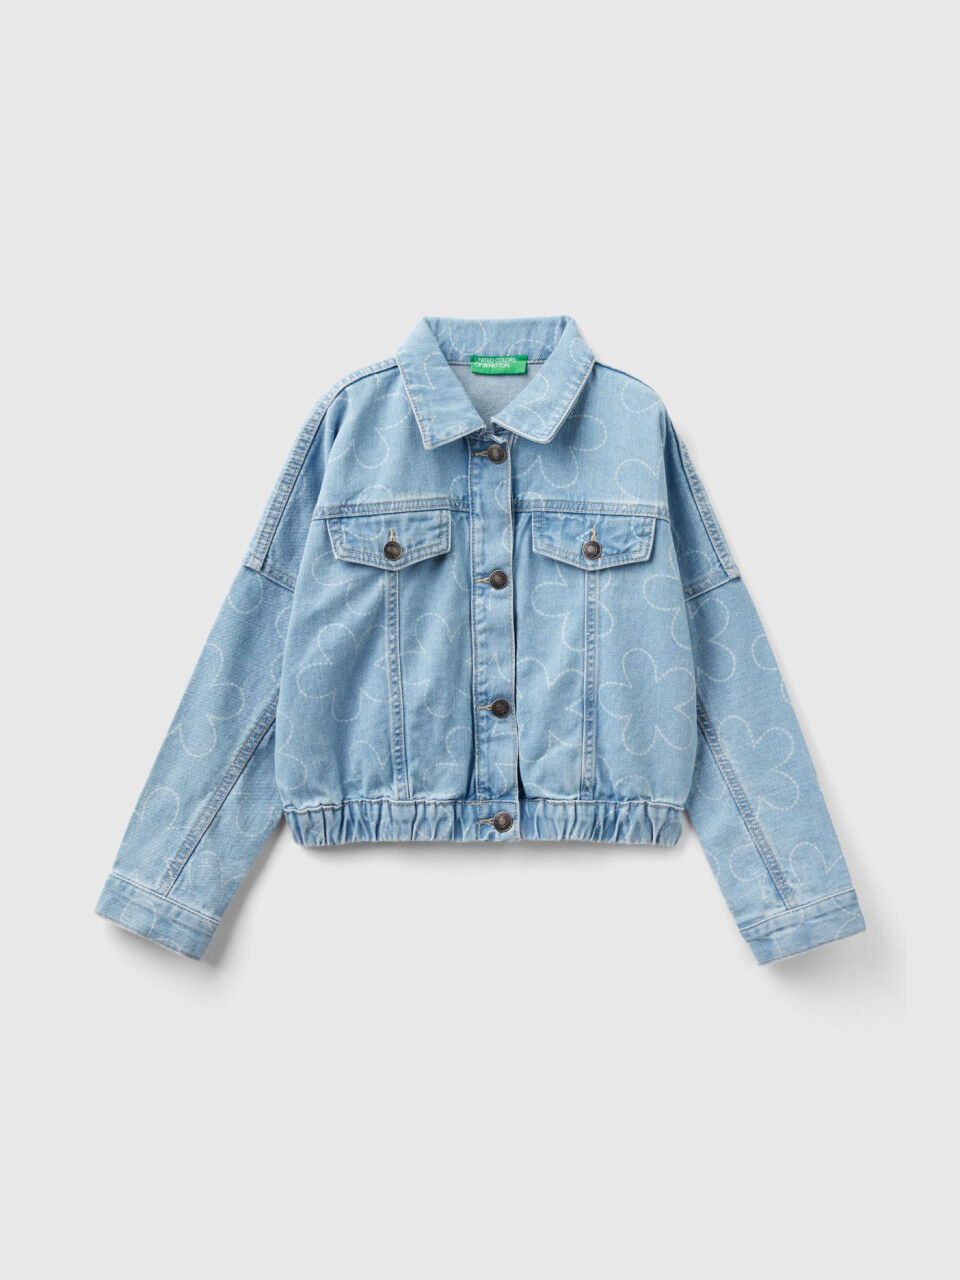 Girls Patch Pocket Denim Jacket | Cute Girls' Clothes – Hayden Girls